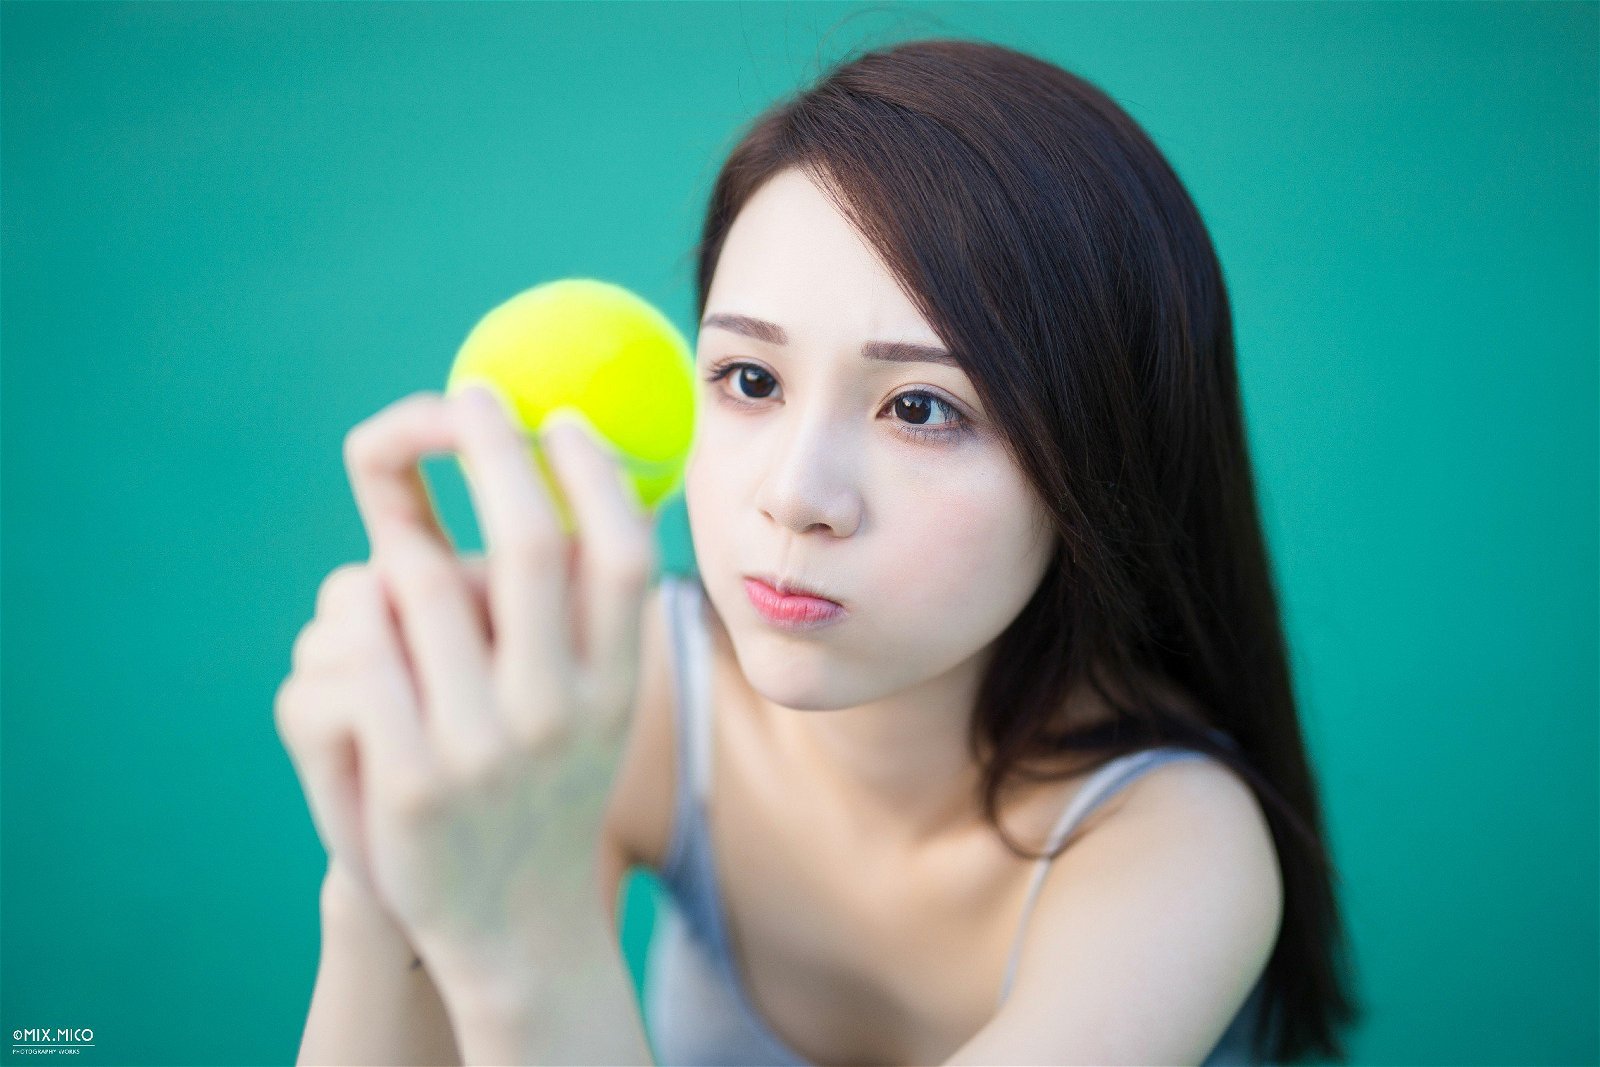 004-tennis-girl (12).jpg